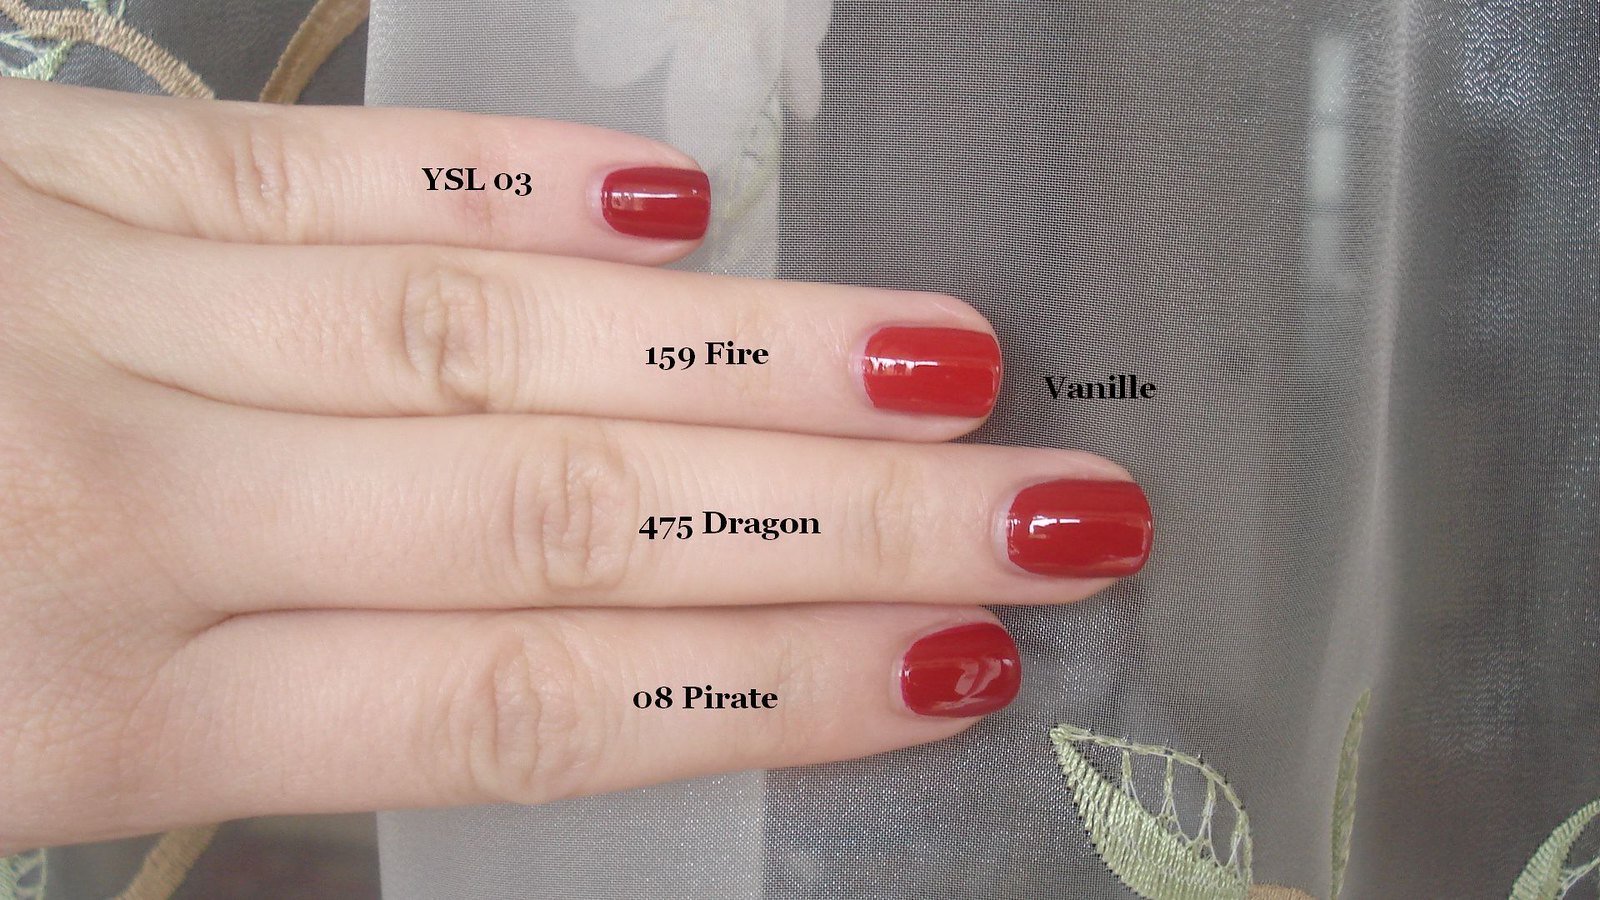 Chanel Fire vs Dragov vs Pirate vs YSL 03, Y V